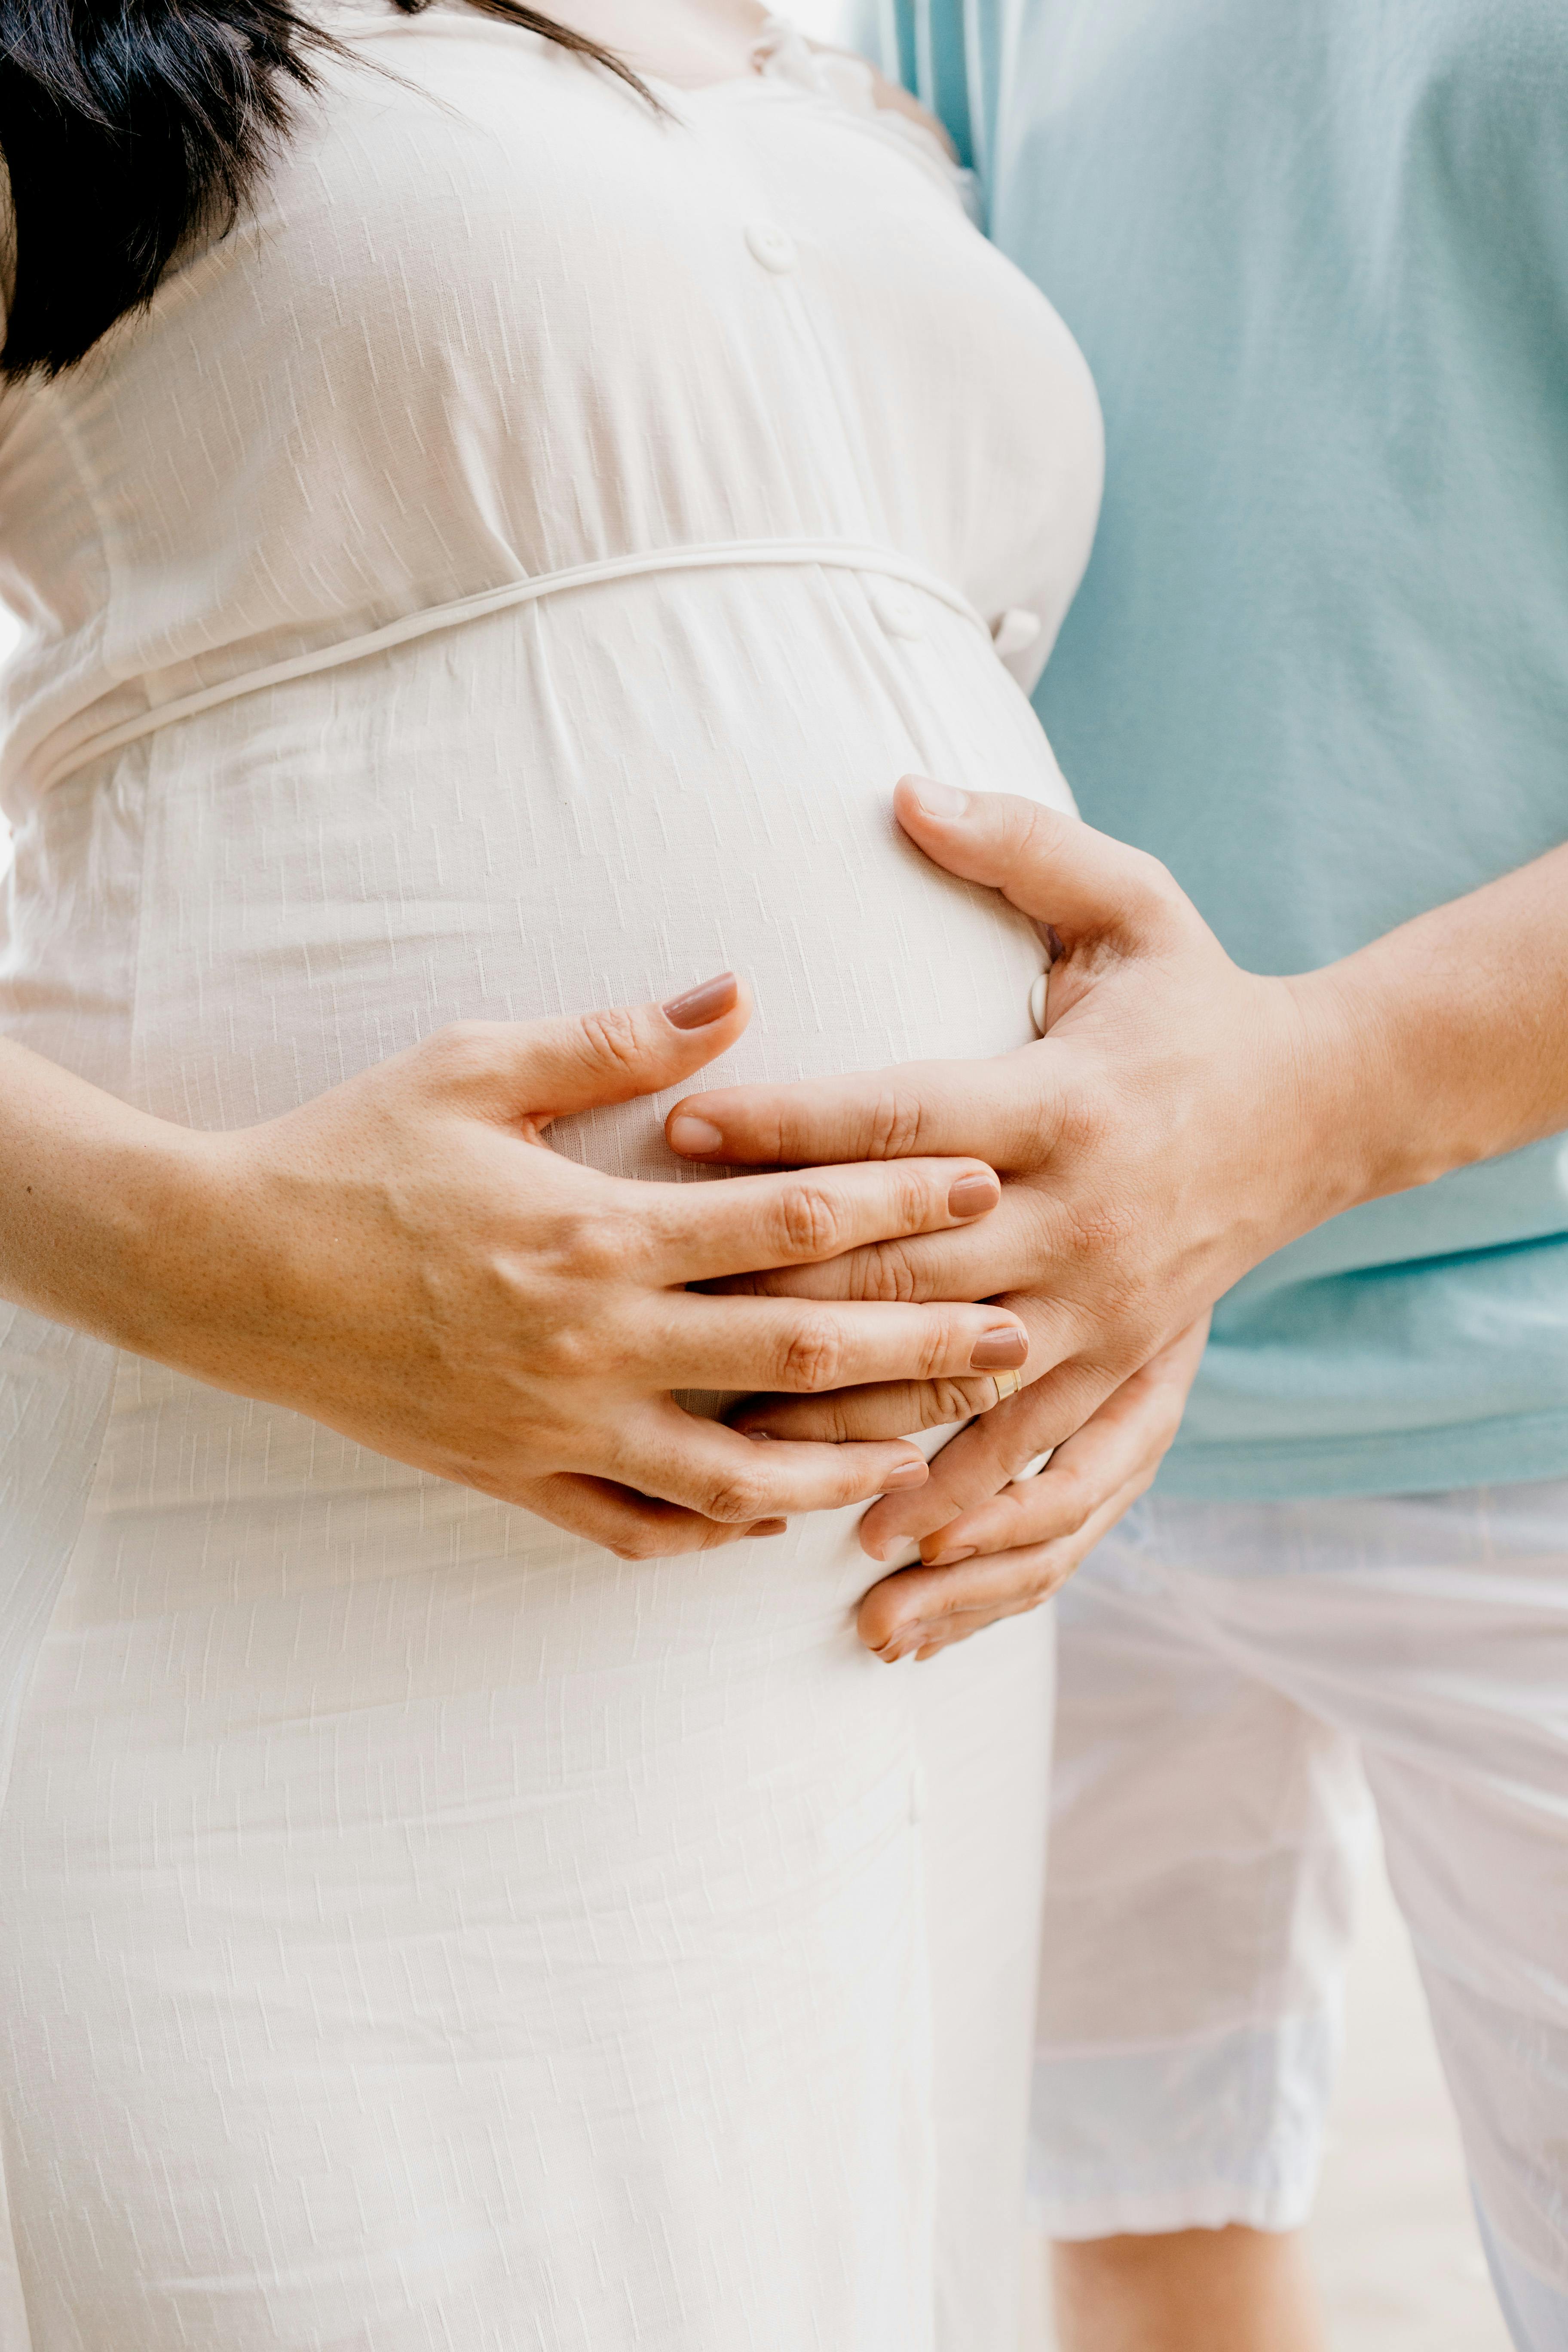 Un femme enceinte et un homme à ses côtés | Source : Pexels